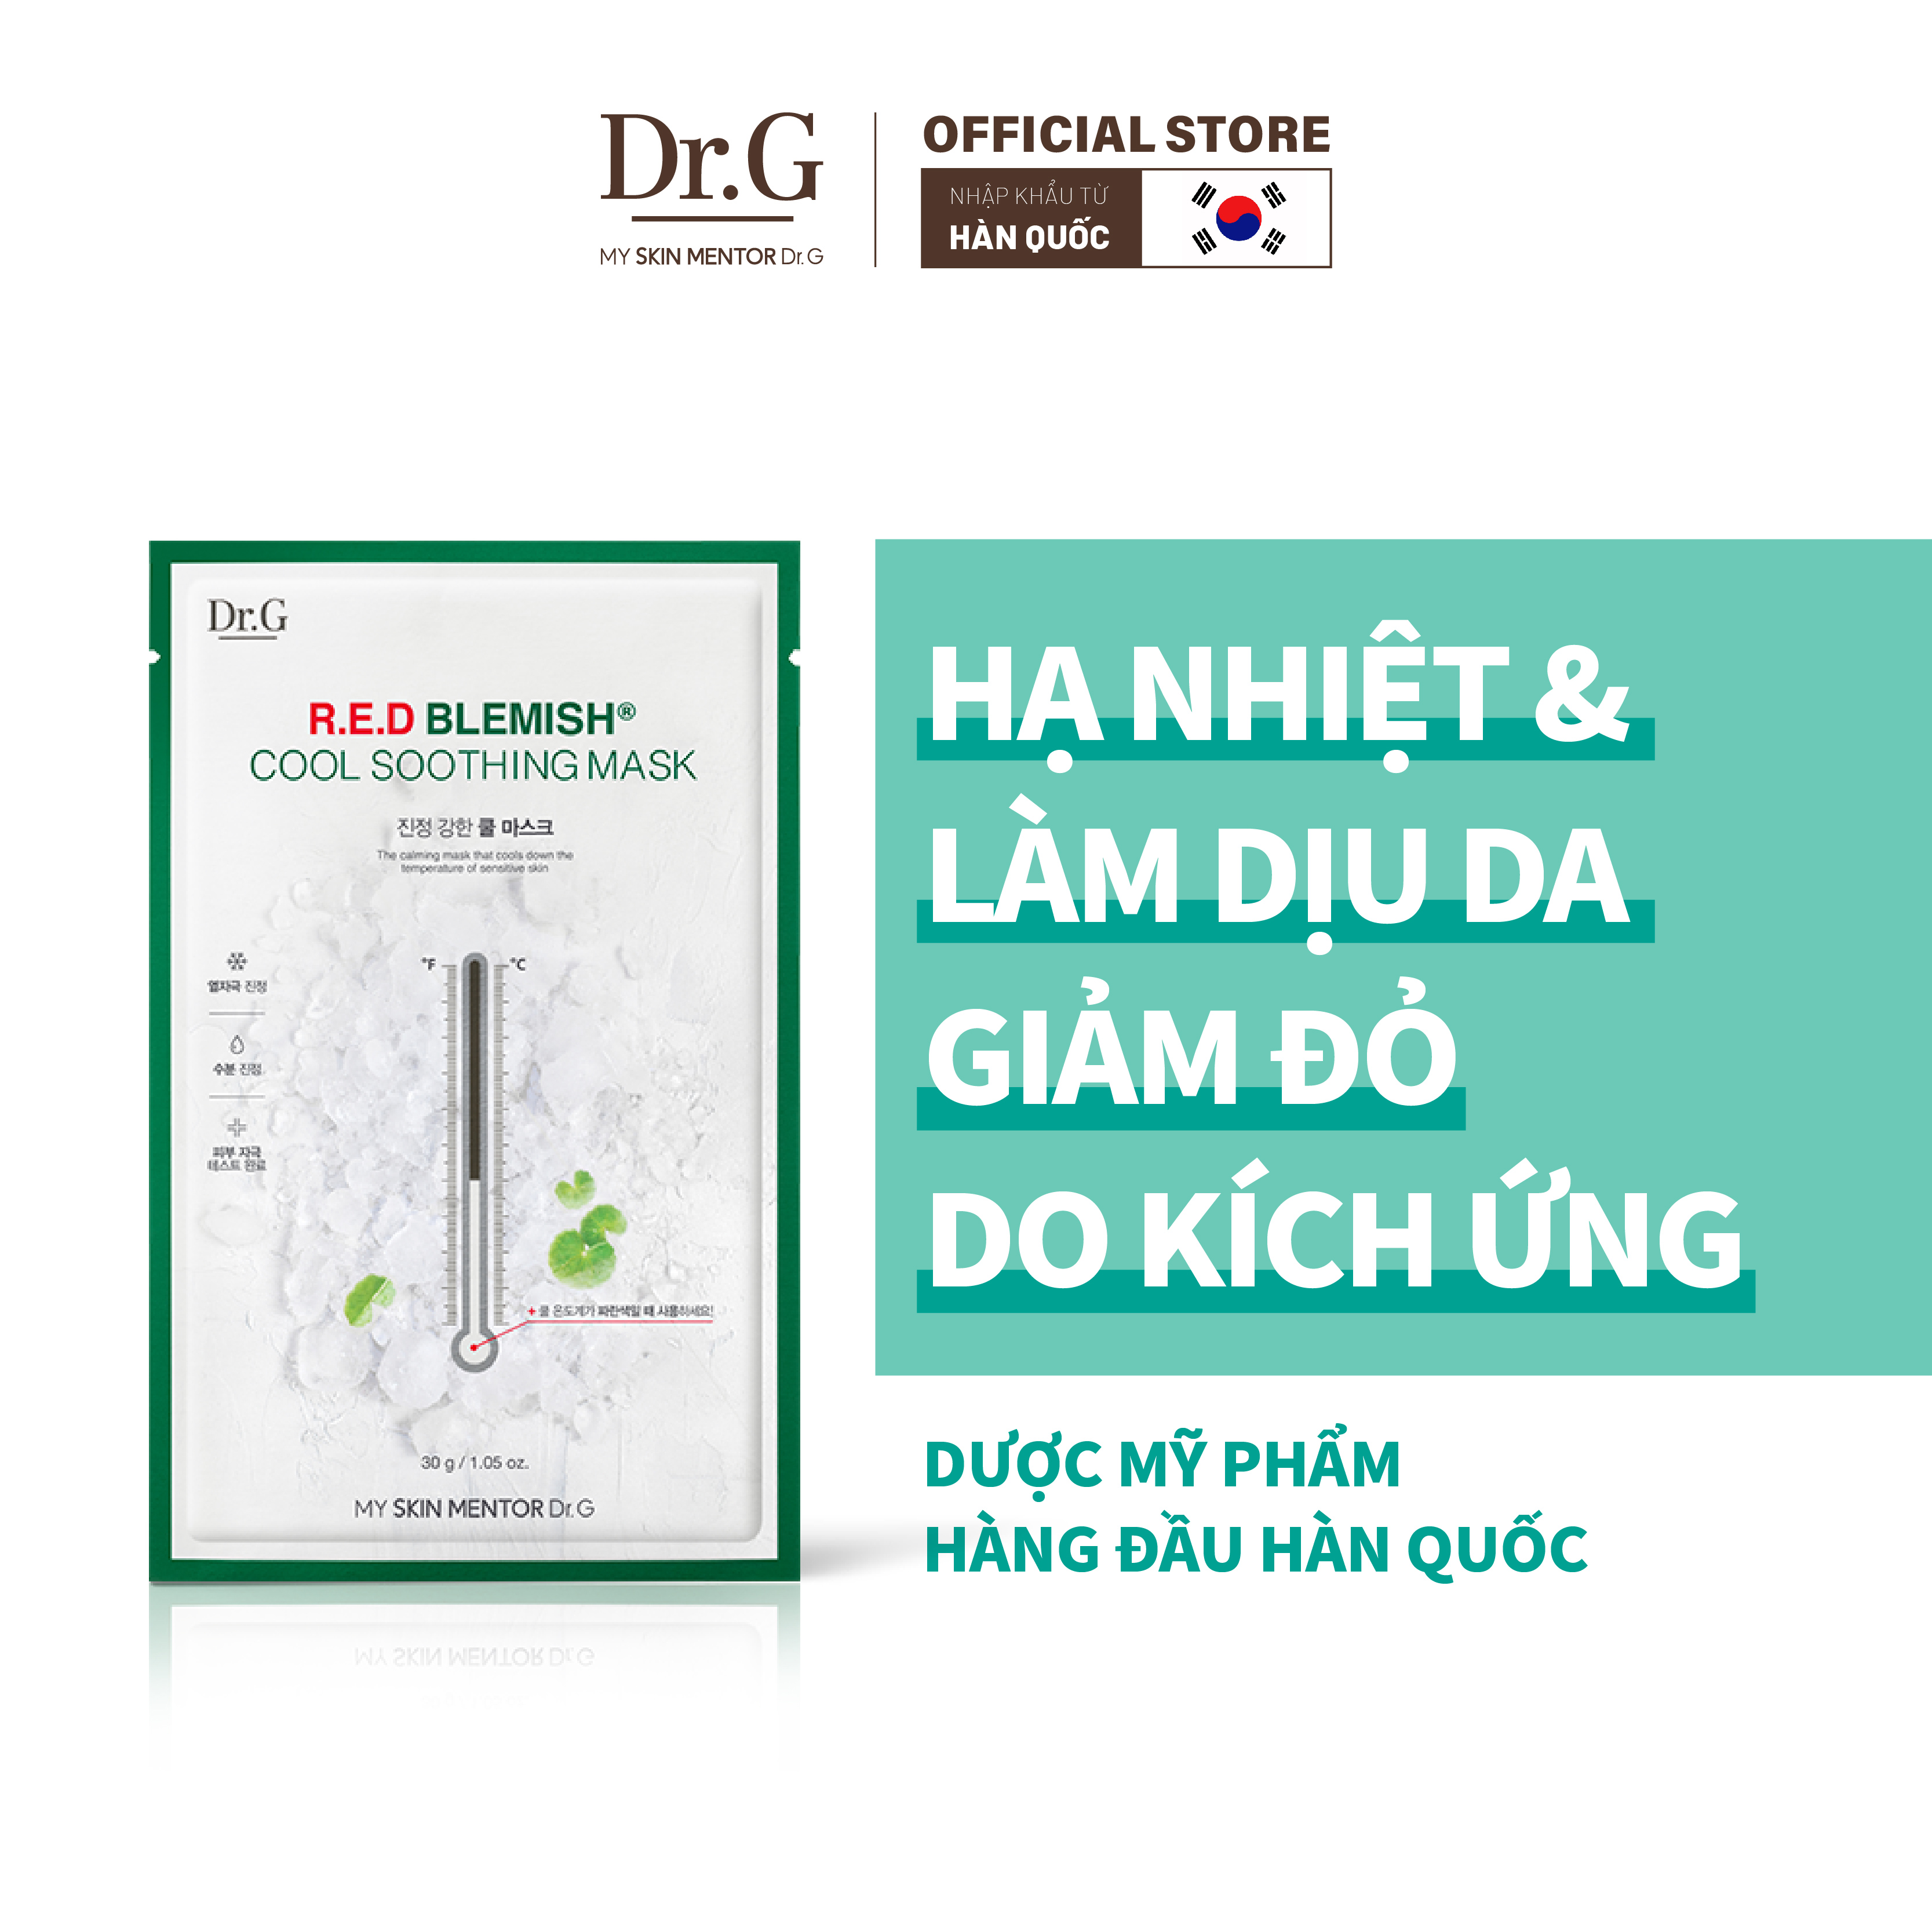 Mua Dr. G Kem chống nắng  phục hồi sau đi nắng, Sữa rửa mặt, Dưỡng ẩm da  mặt chuyên sâu với giá tốt nhất tại Việt Nam | Lazada.vn